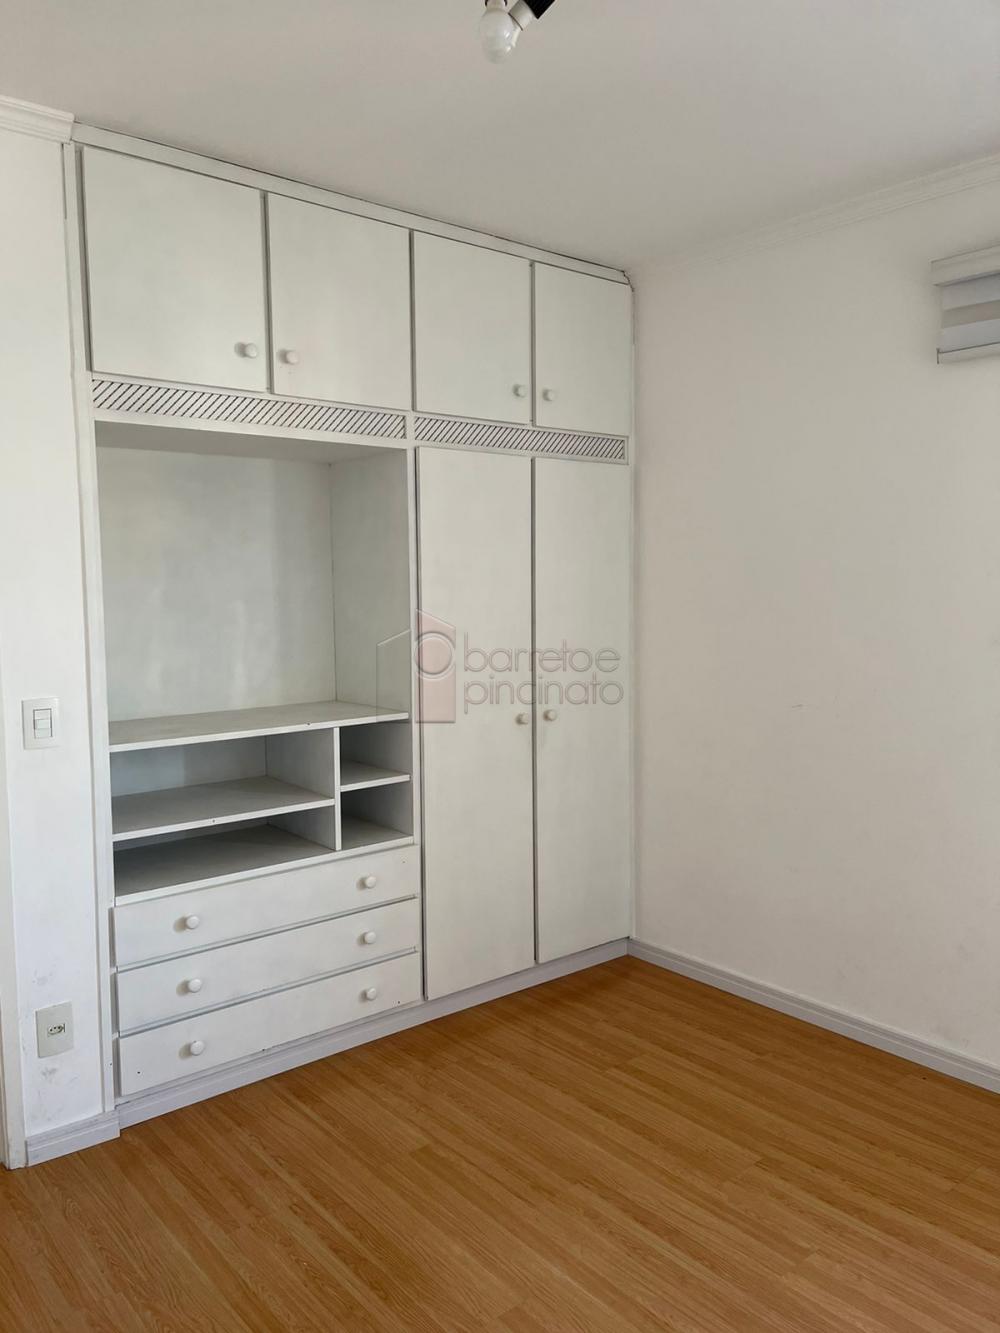 Comprar Apartamento / Padrão em Jundiaí R$ 450.000,00 - Foto 10